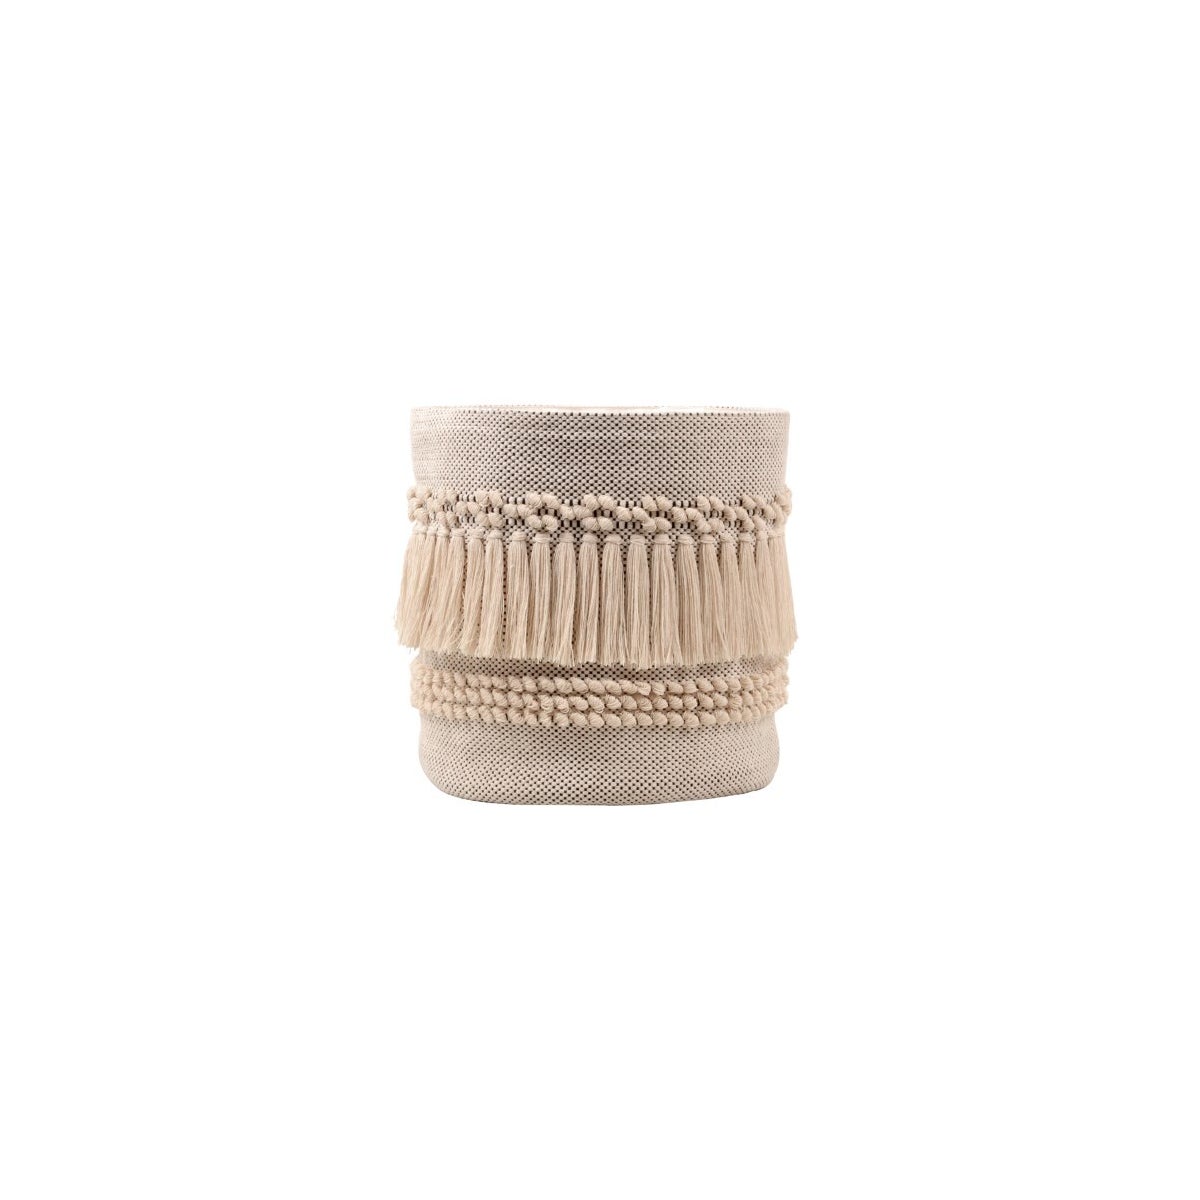 Cotton Textured Basket With Tassels